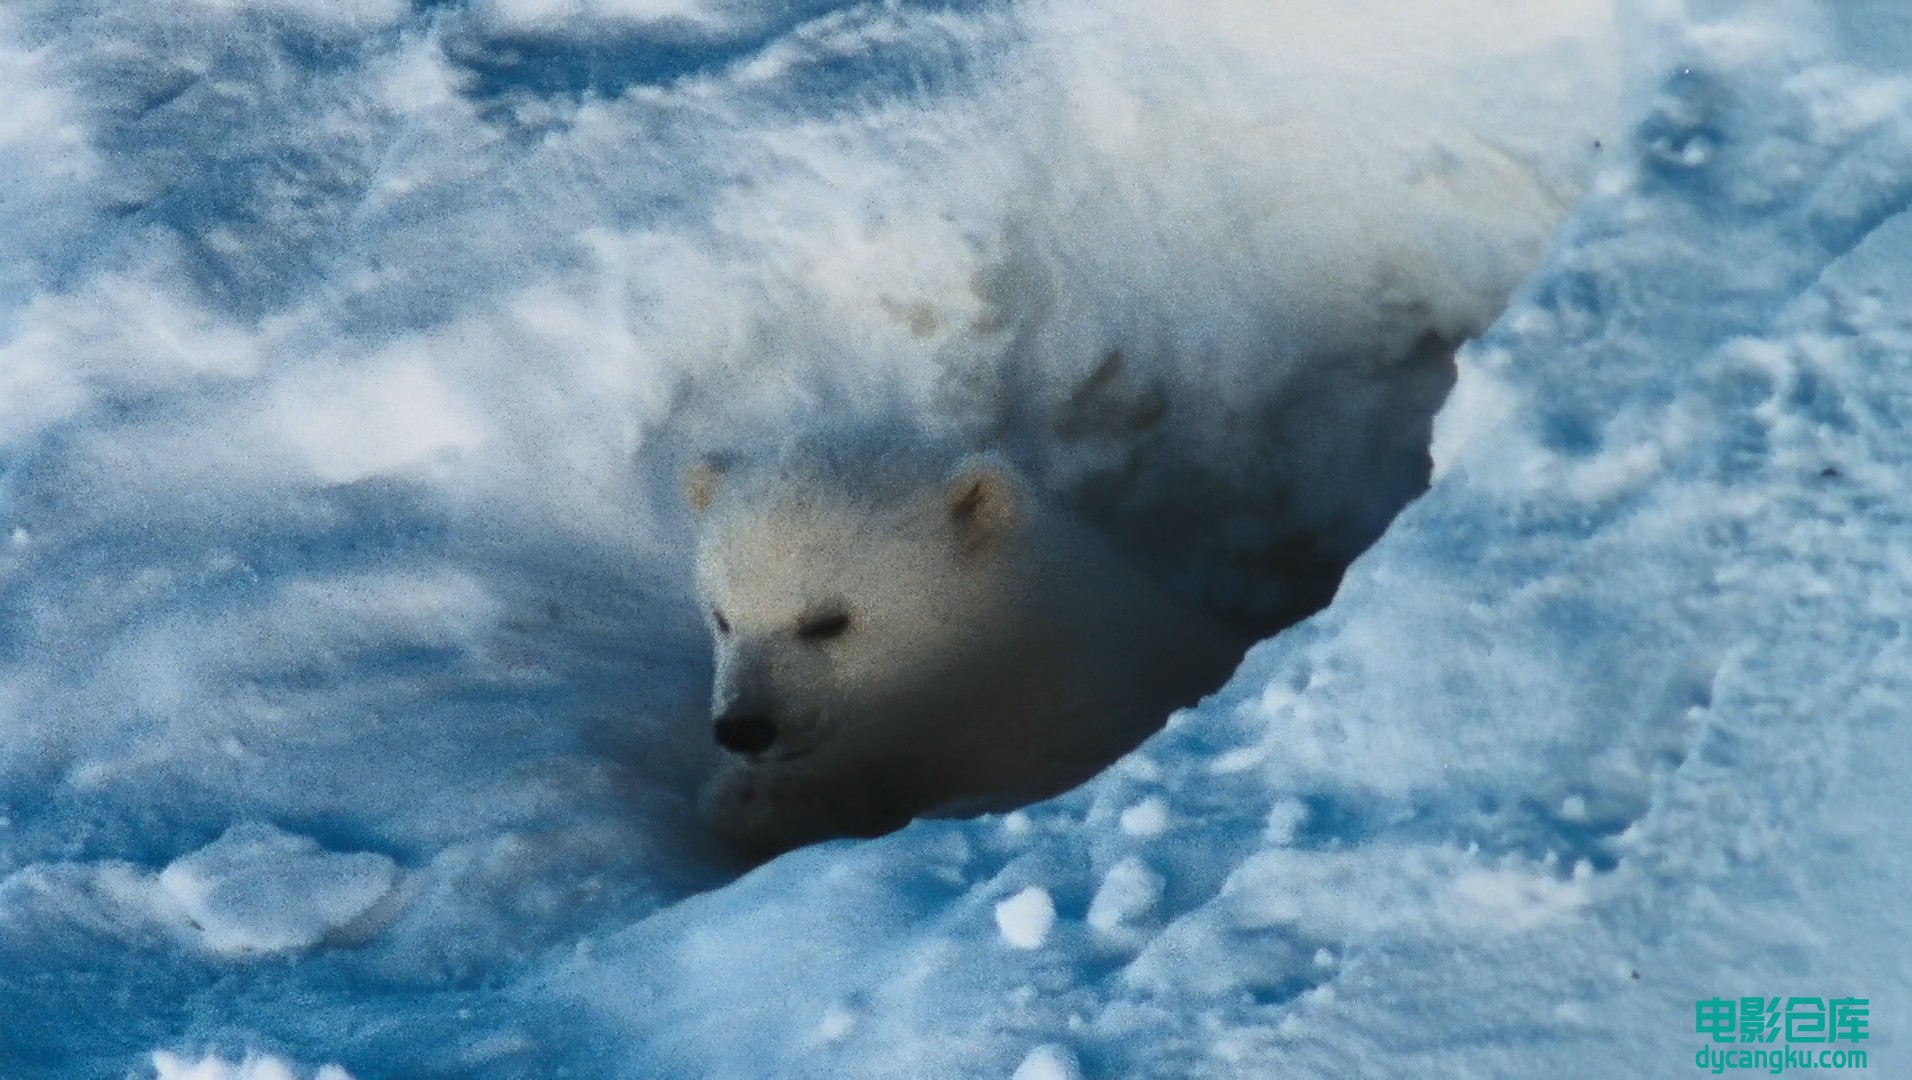 [电影仓库dycangku.com]国家地理.北极传说National.Geographic.Arctic.Tale.2007.Blur.jpg